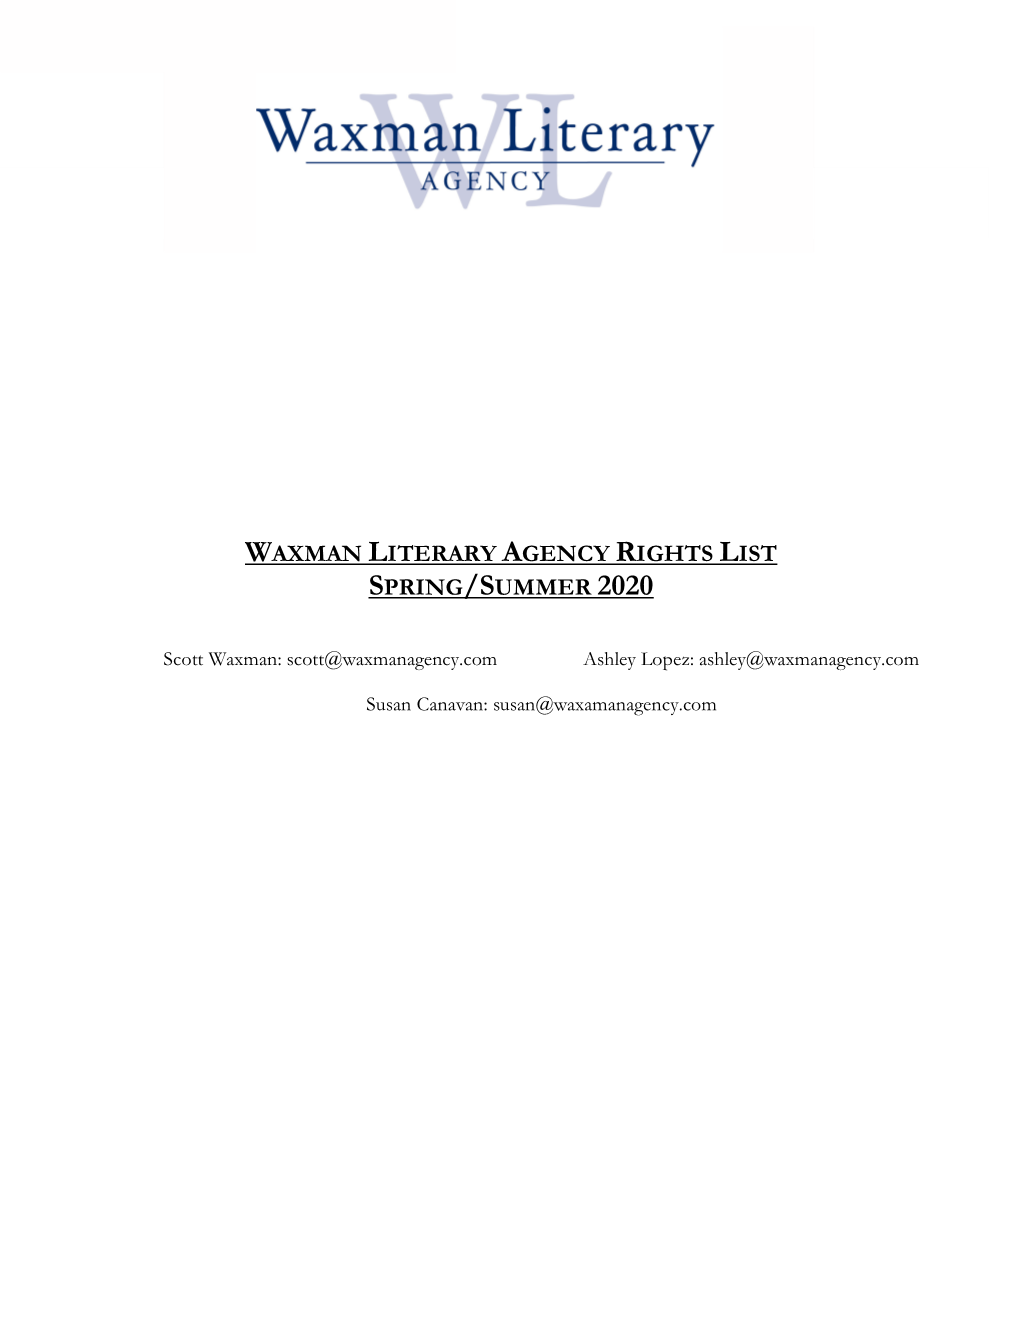 Waxman Literary Agency Rights List Spring/Summer 2020